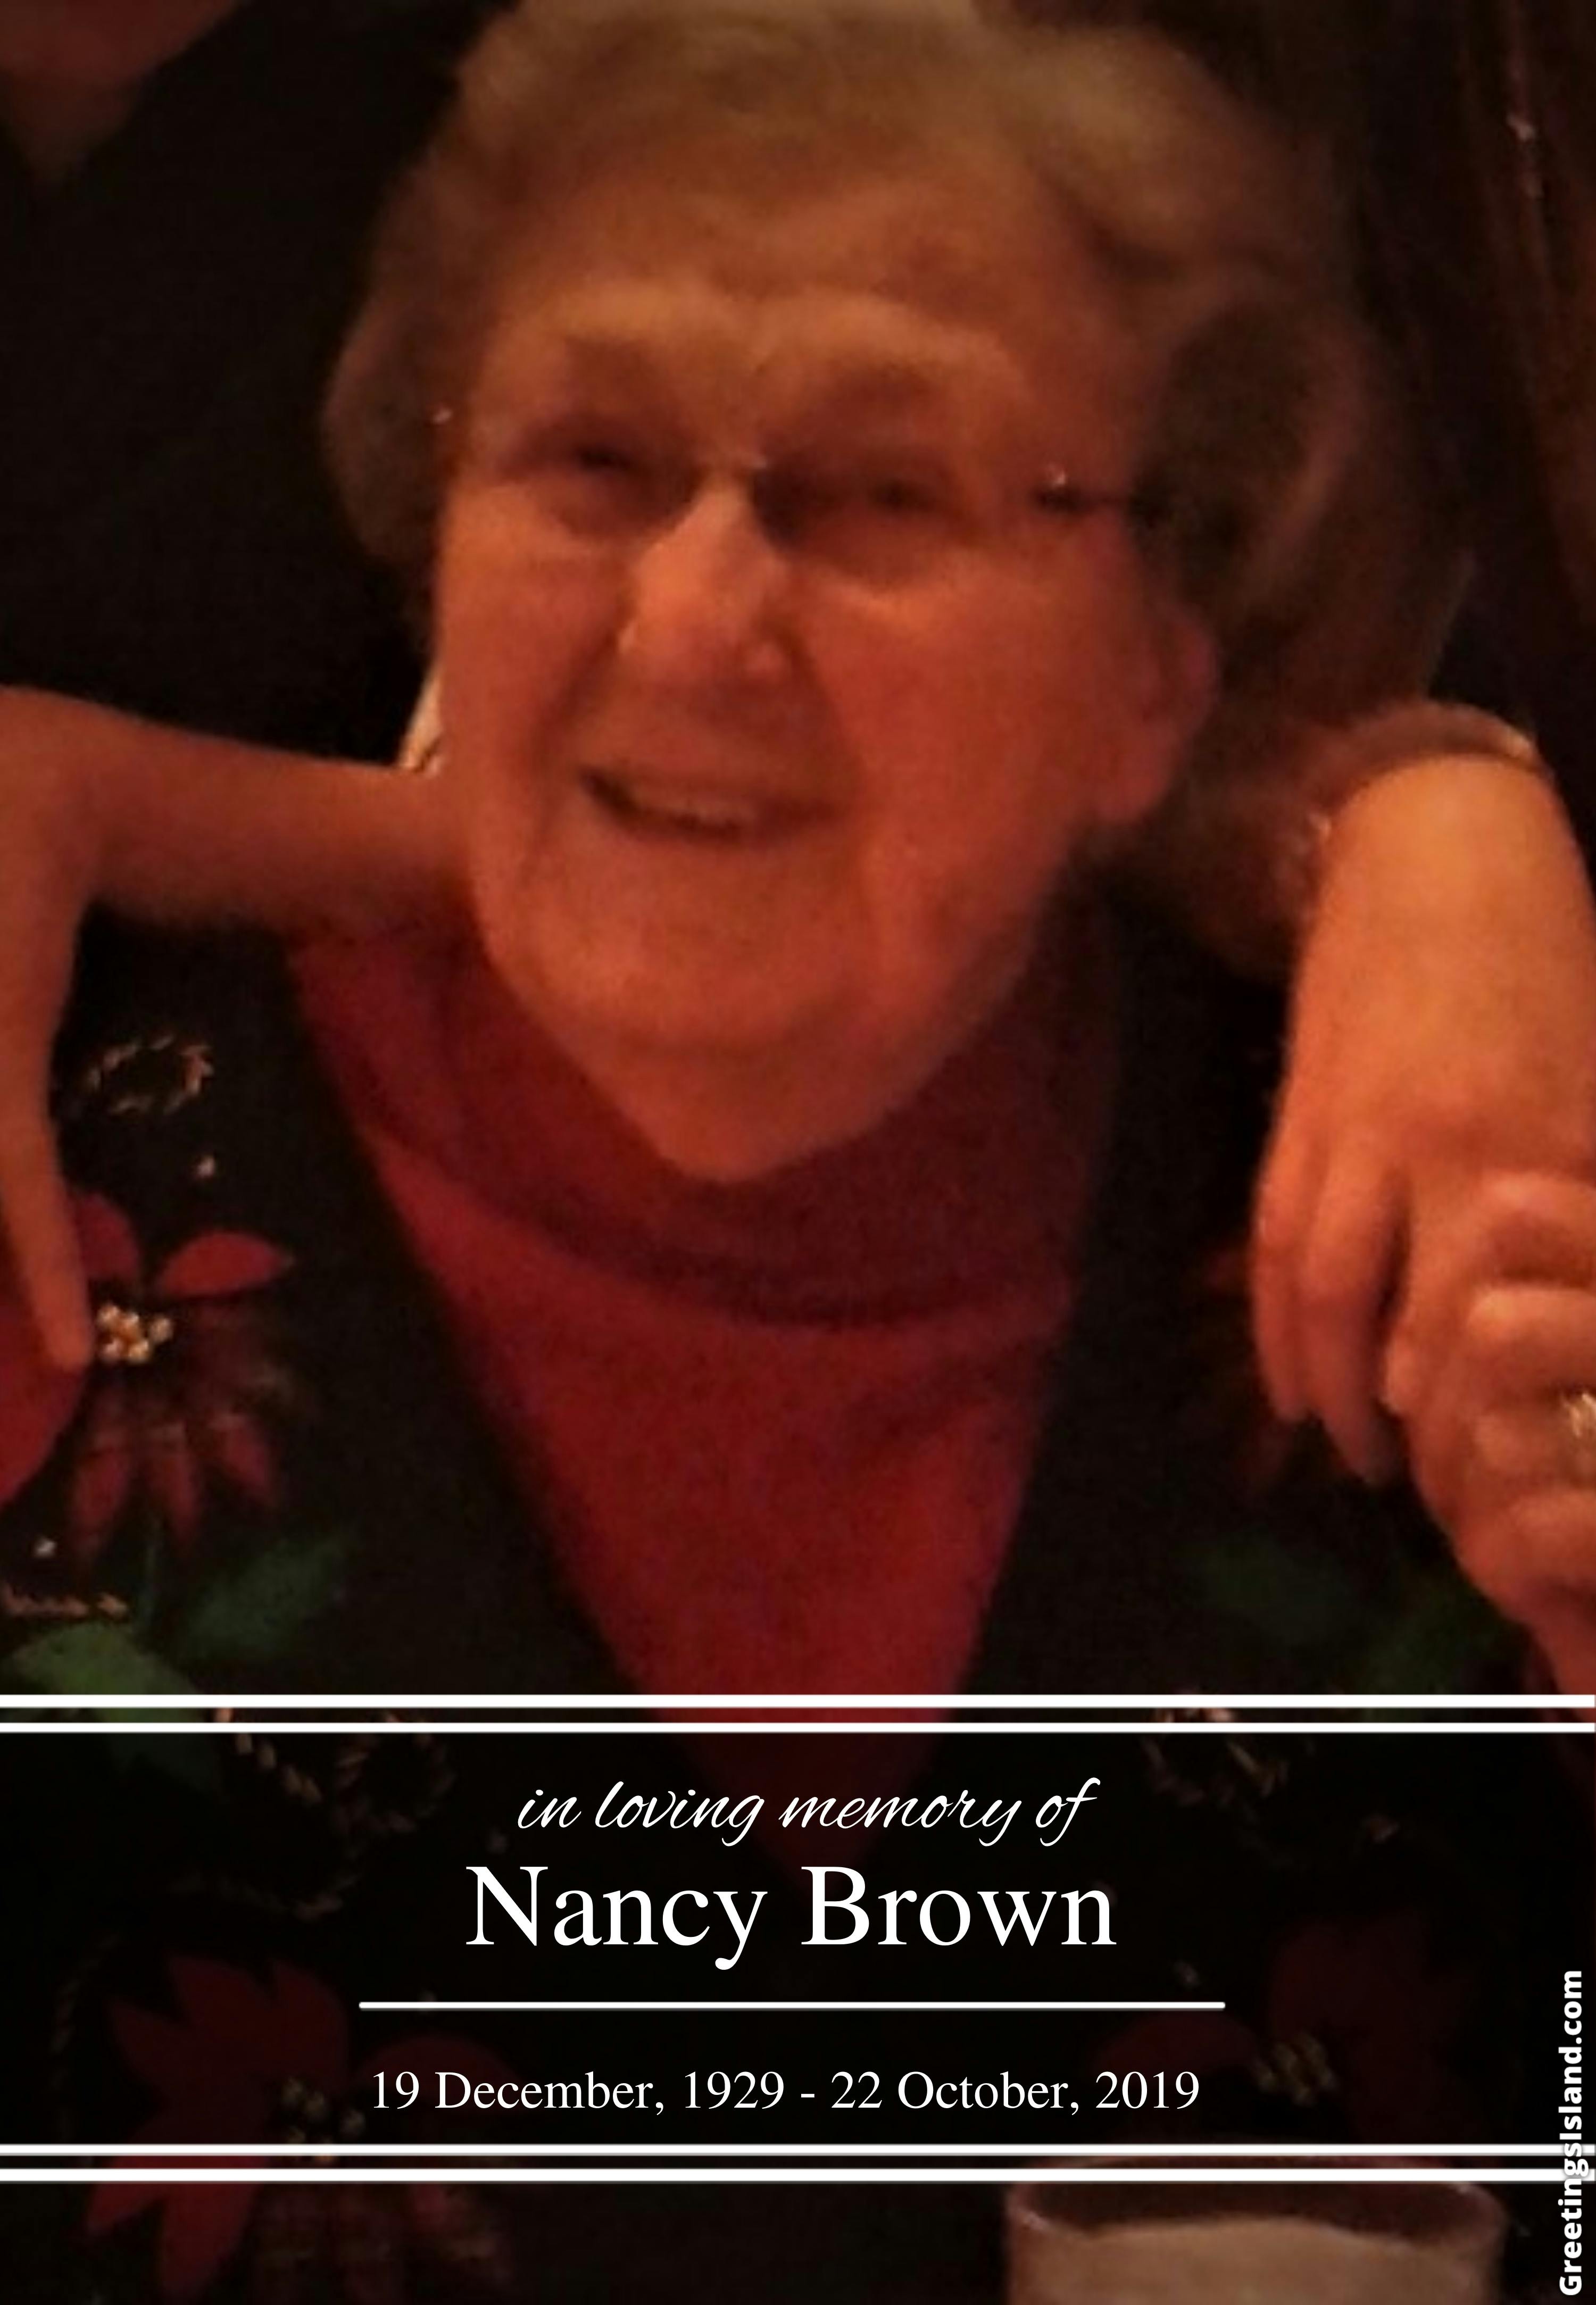 Brown by Nancy Johnson James